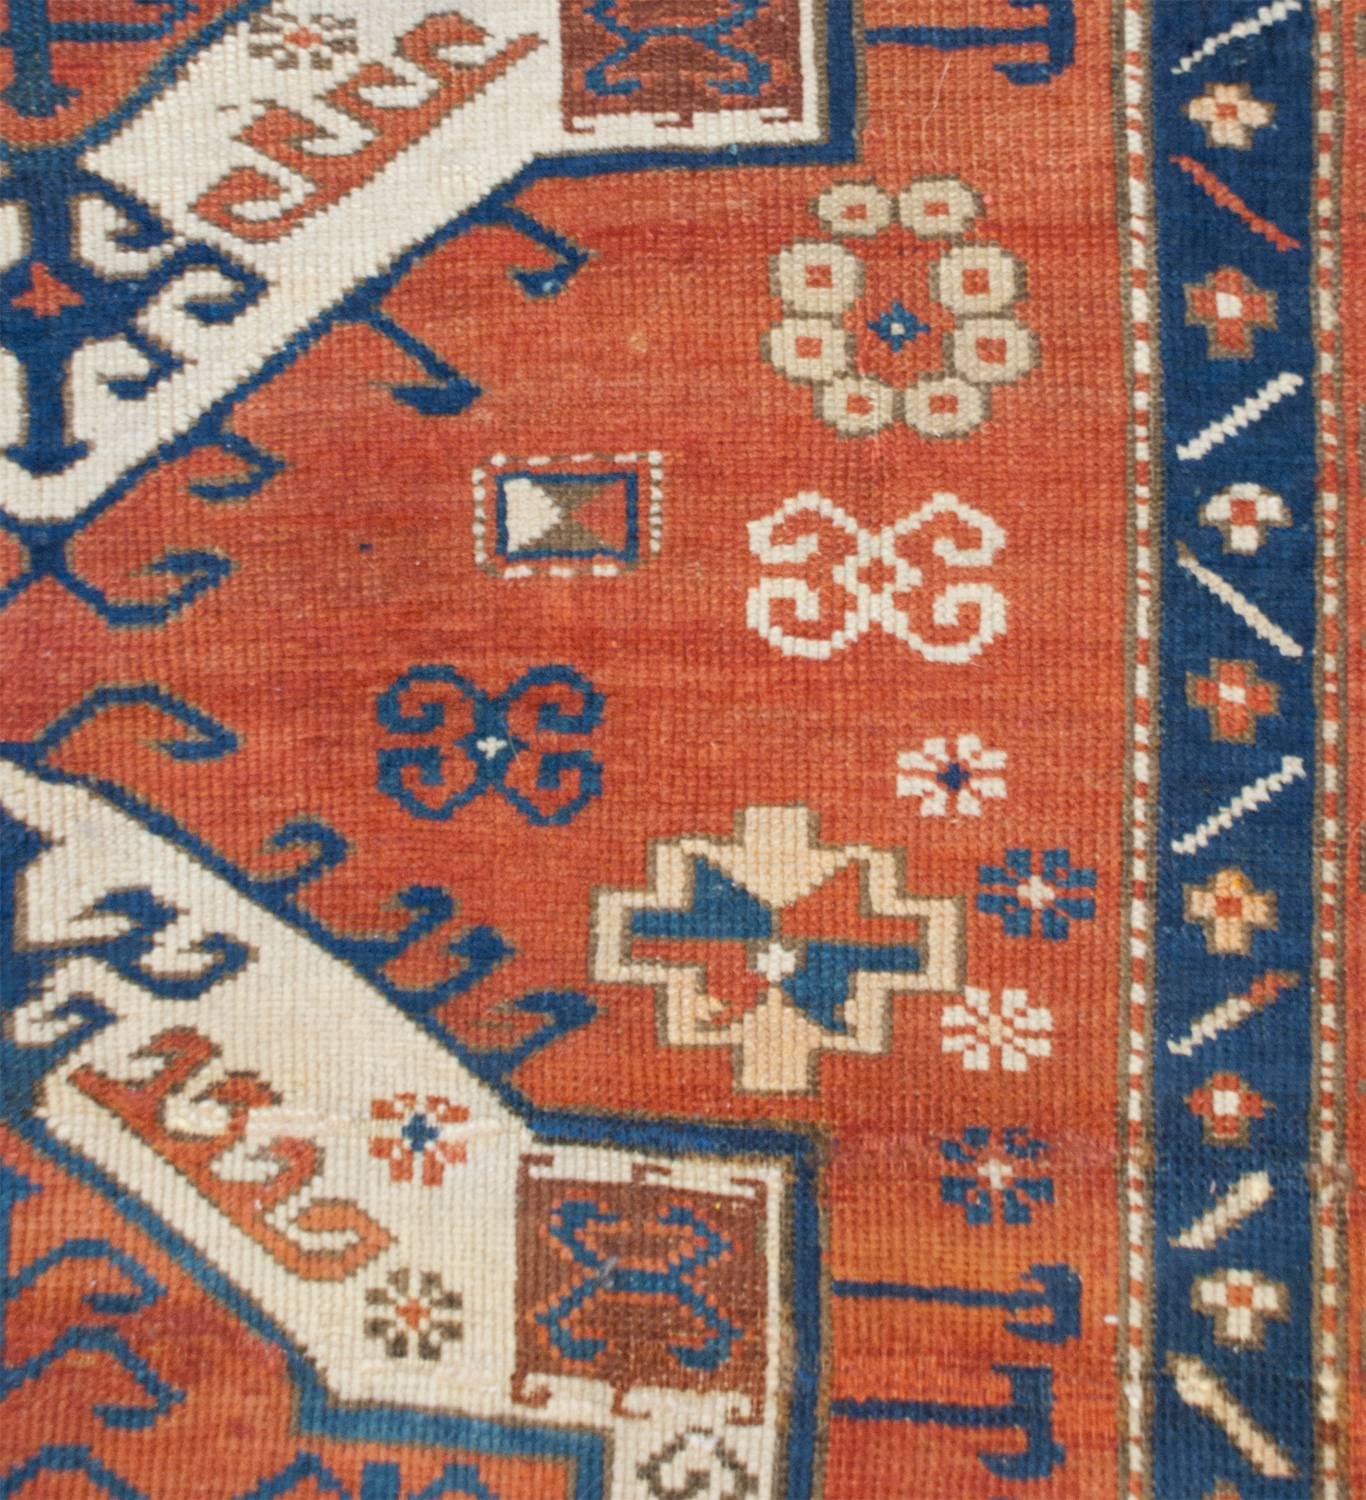 Asian Interesting 19th Century Fachralo Kazak Rug For Sale